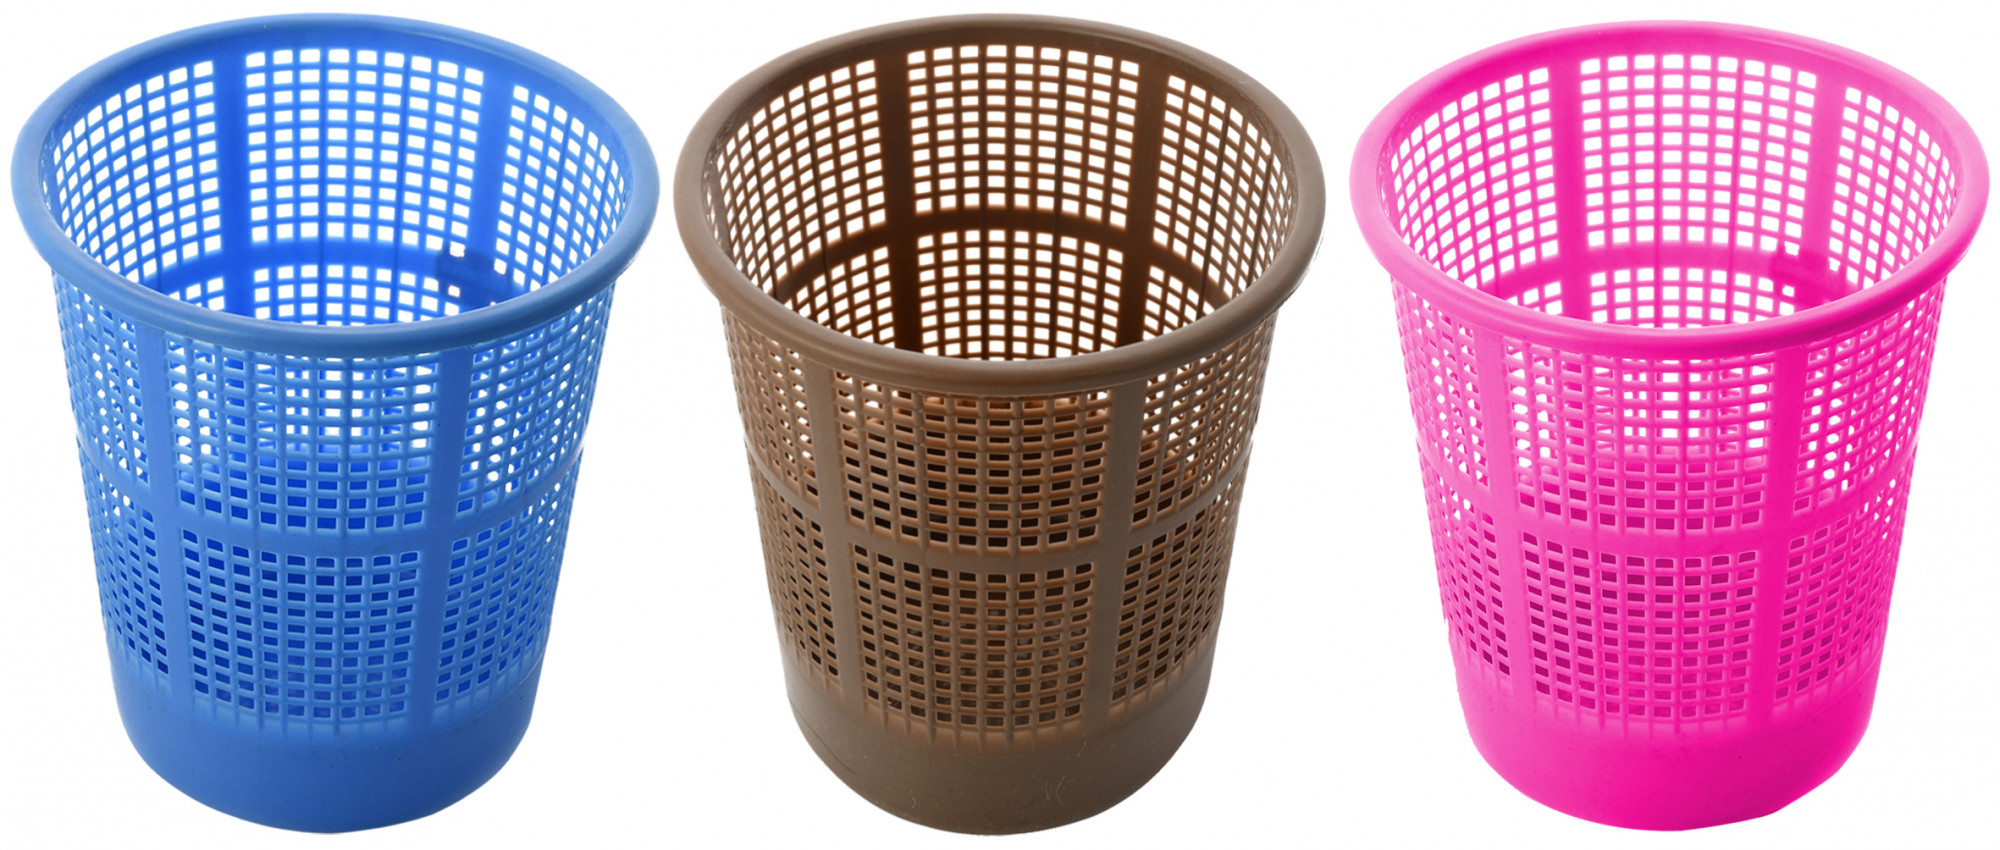 Kuber Industries Plastic Mesh Dustbin Garbage Bin for Office use, School, Bedroom,Kids Room, Home, Multi Purpose,5 Liters (Blue & Brown & Pink)-KUBMART278